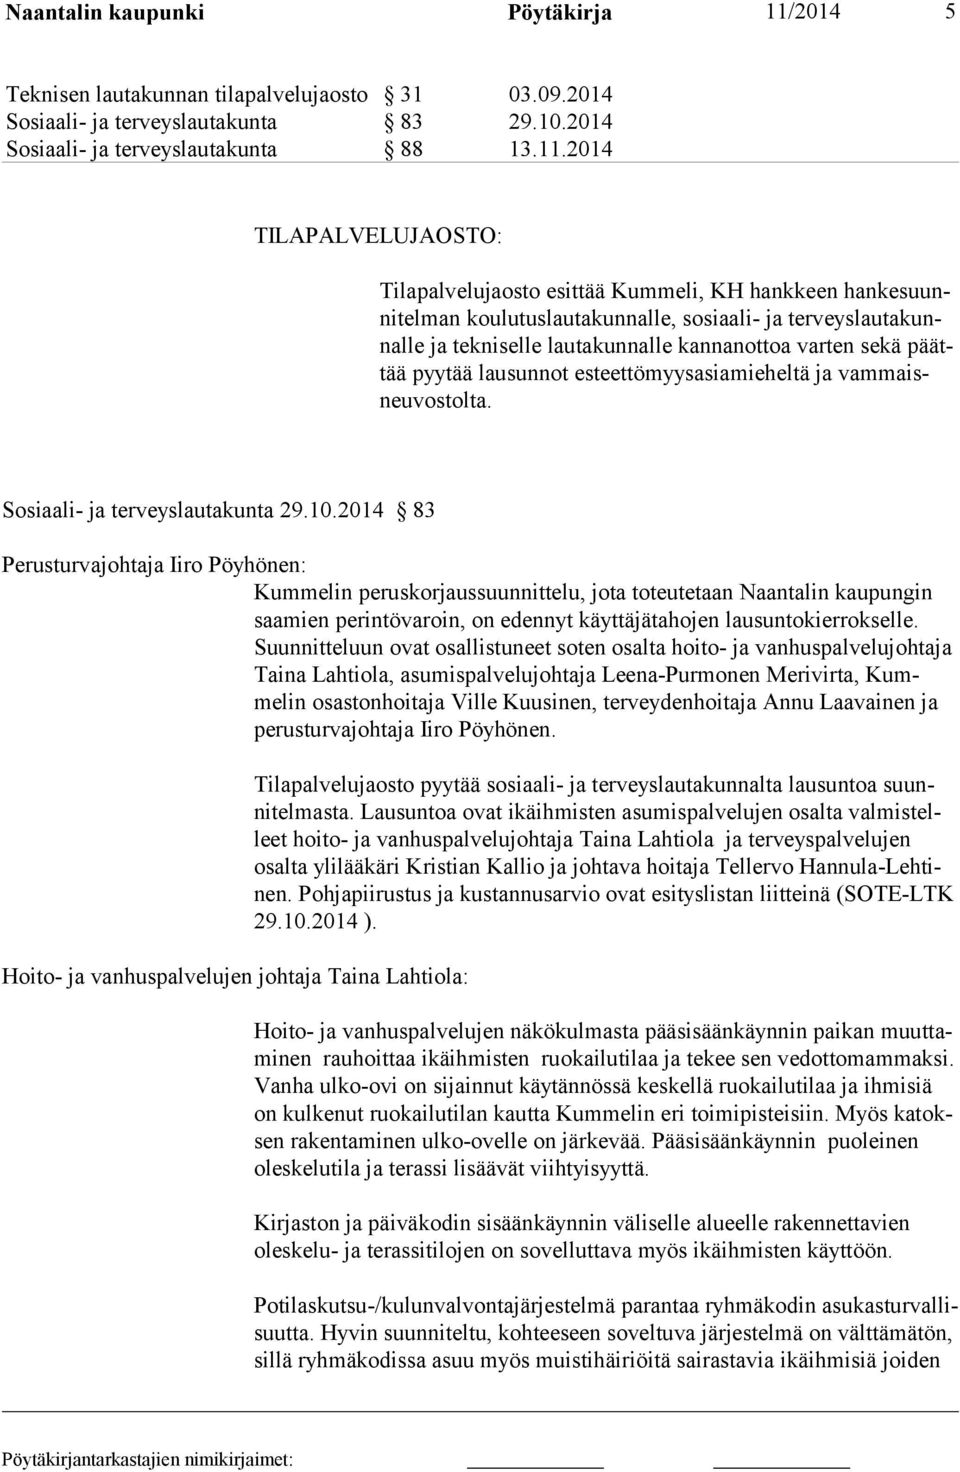 2014 TILAPALVELUJAOSTO: Tilapalvelujaosto esittää Kummeli, KH hankkeen hankesuunnitelman koulutuslautakunnalle, sosiaali- ja terveyslautakunnalle ja tekniselle lautakunnalle kannanottoa varten sekä